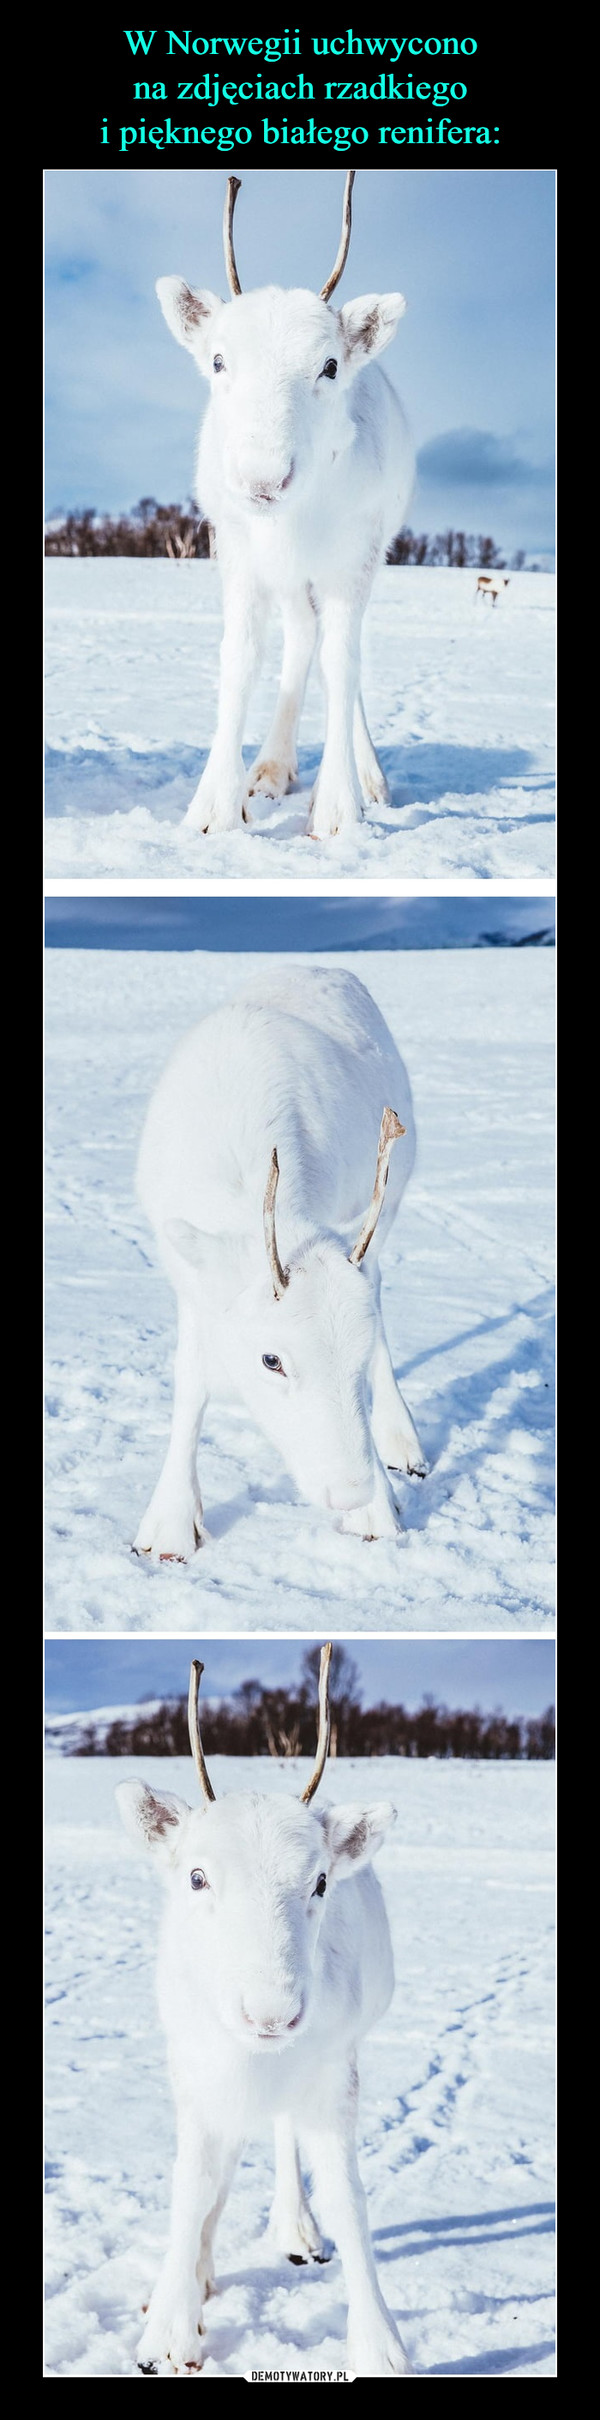 W Norwegii uchwycono
na zdjęciach rzadkiego
i pięknego białego renifera: